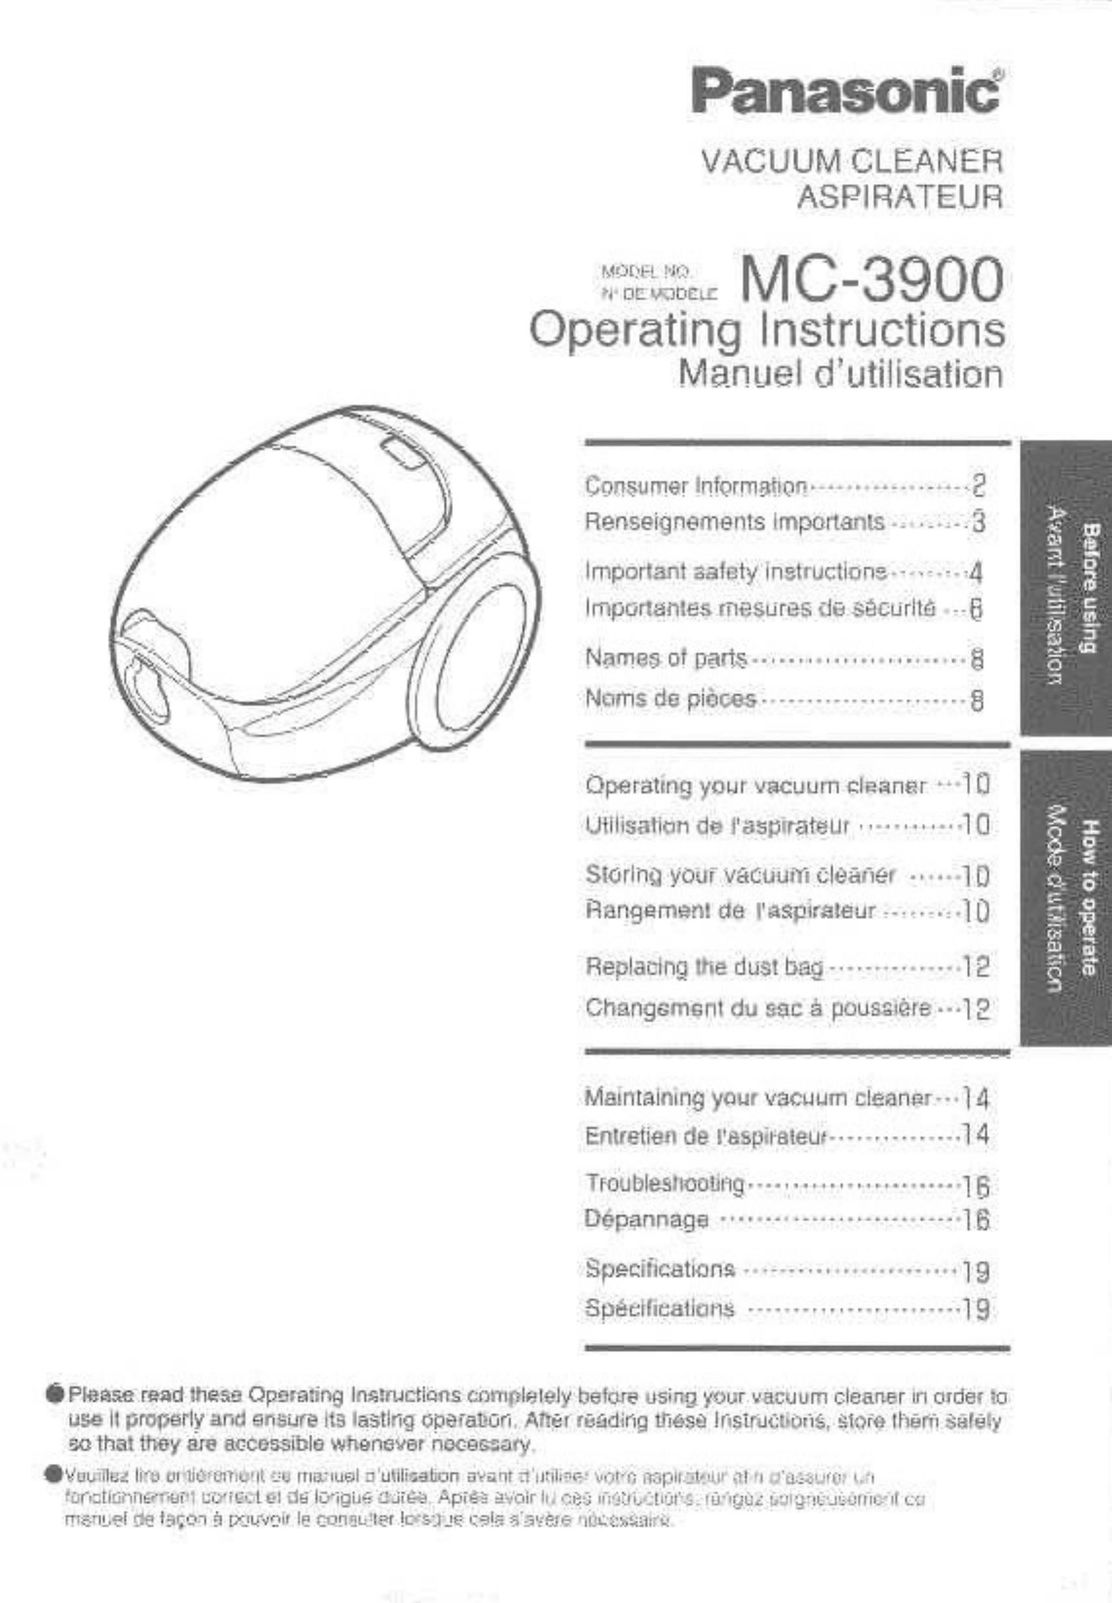 Panasonic MC-3900 Vacuum Cleaner User Manual